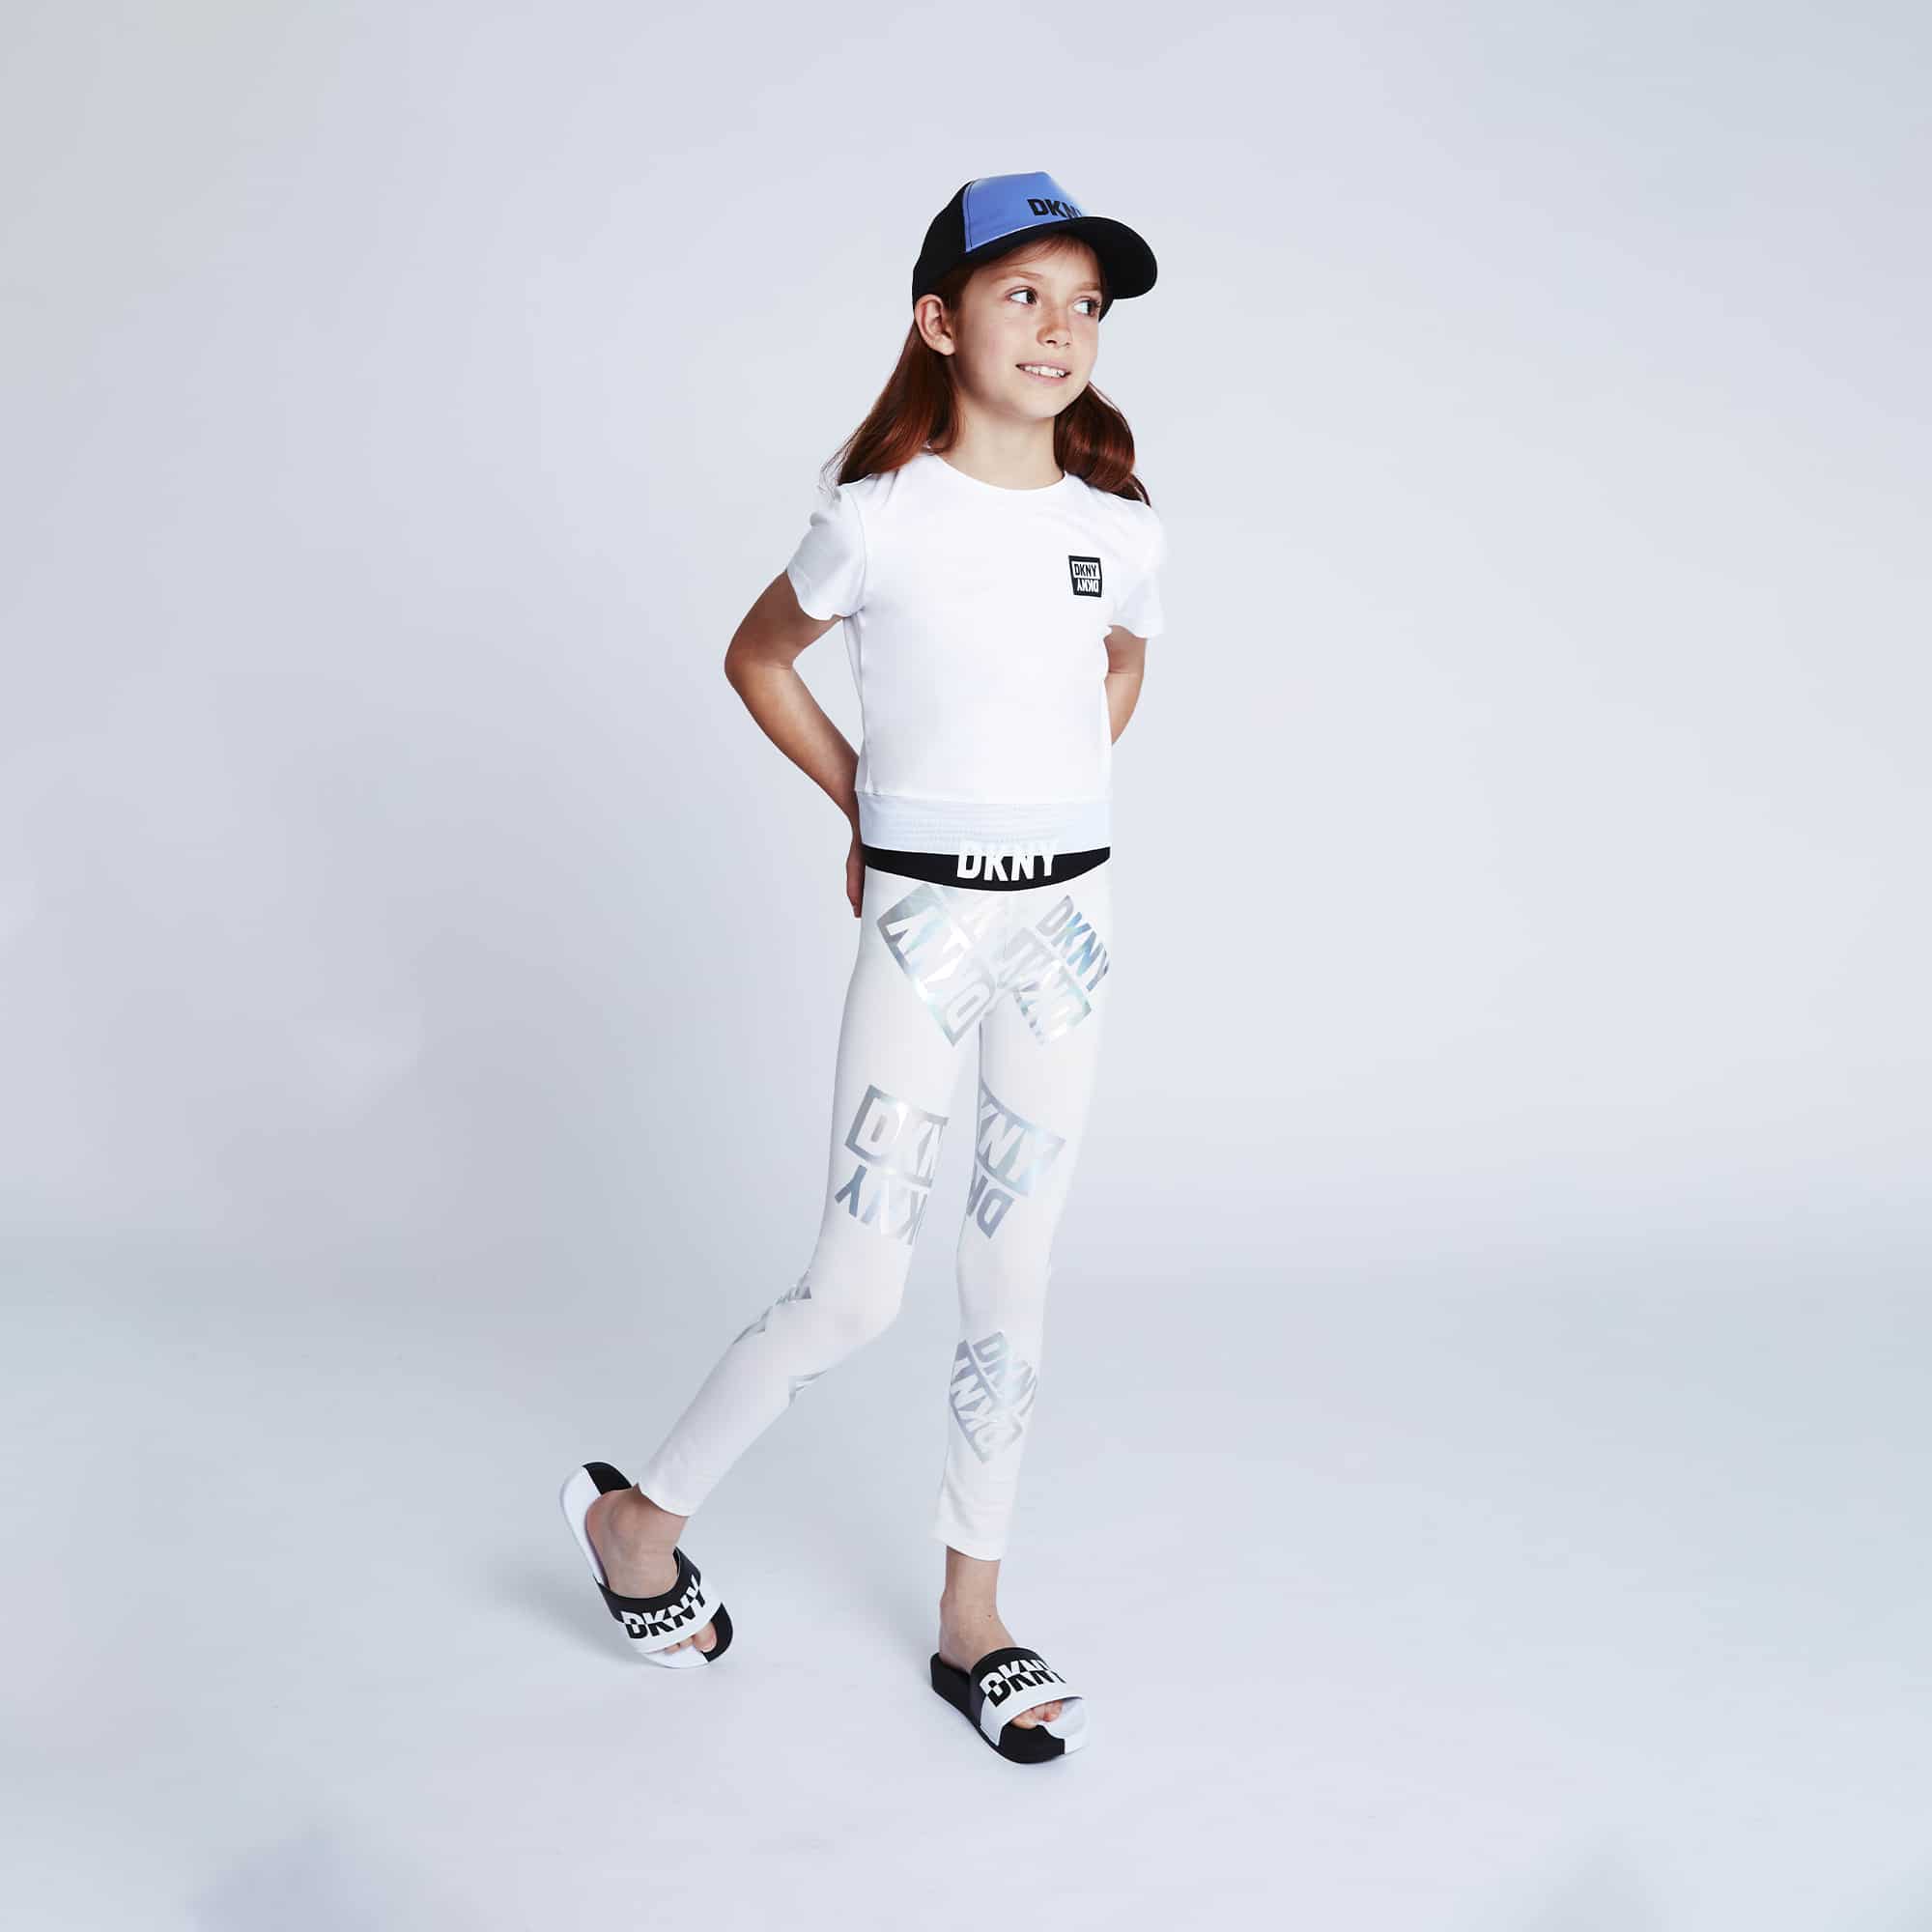 DKNY girl model in white leggings and cap